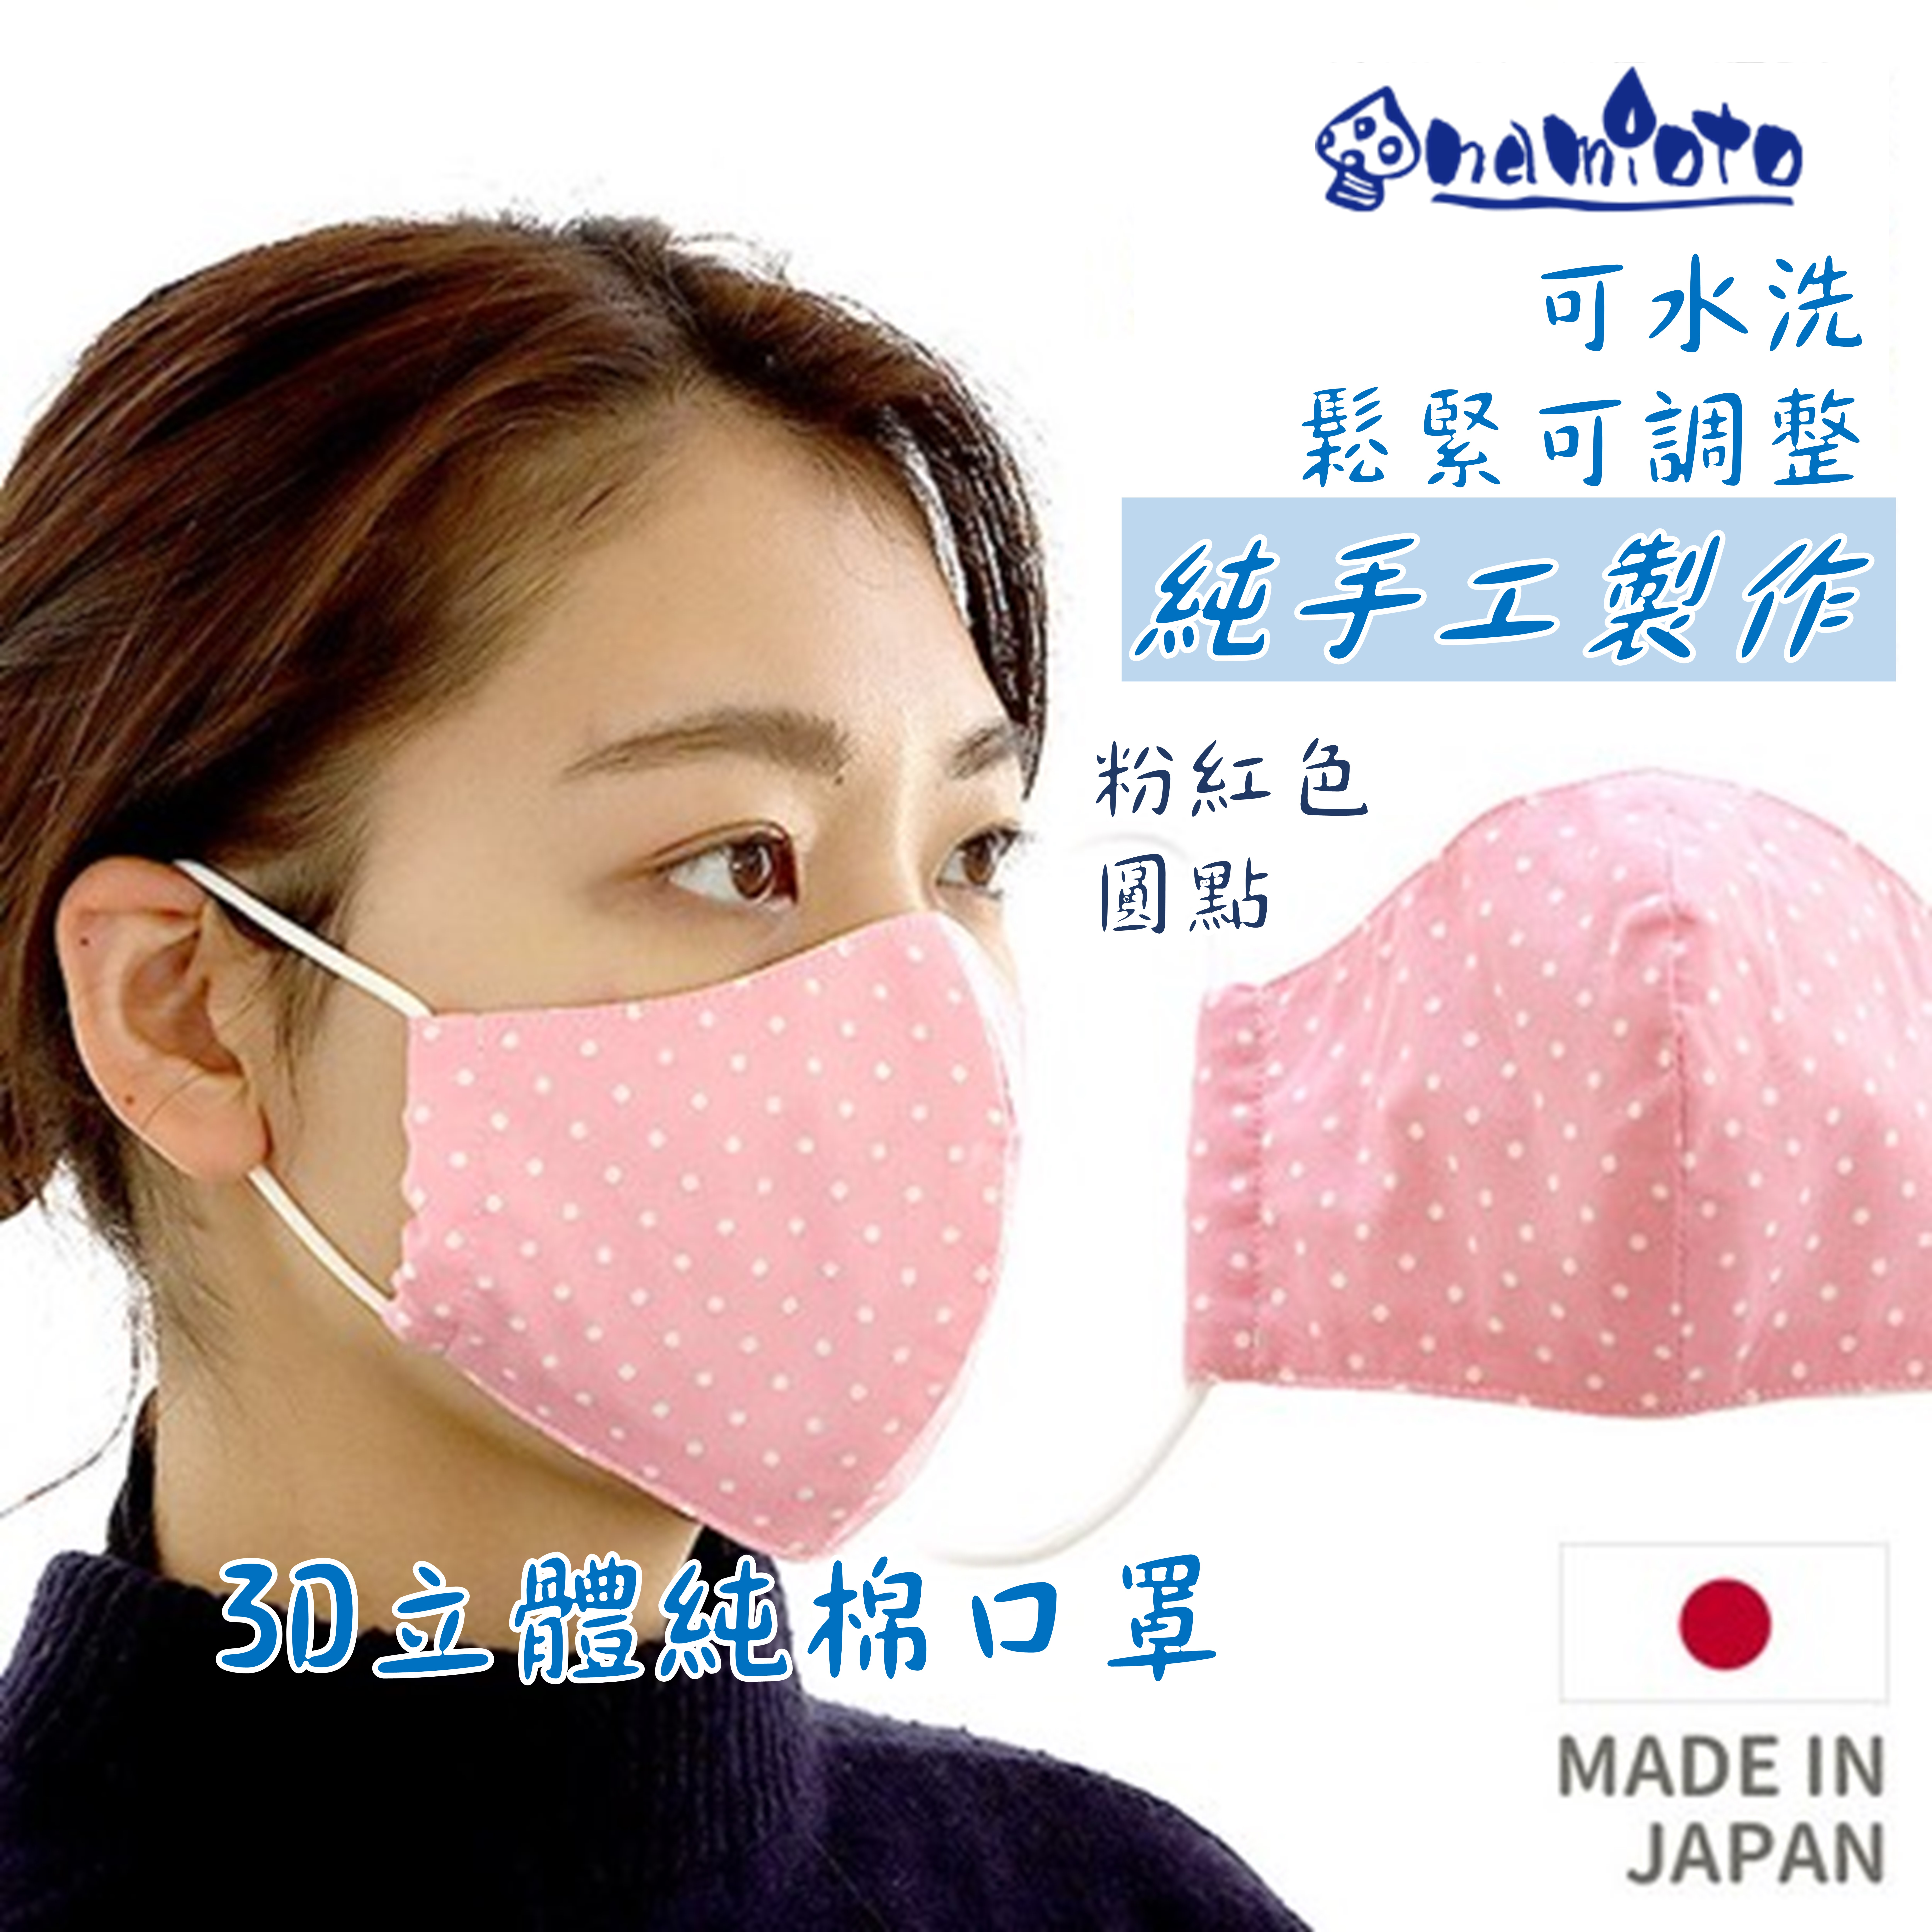 日本 namioto純手工純棉雙層口罩 3D 立體口罩 紅色圓點 防曬吸汗高透氣 口罩